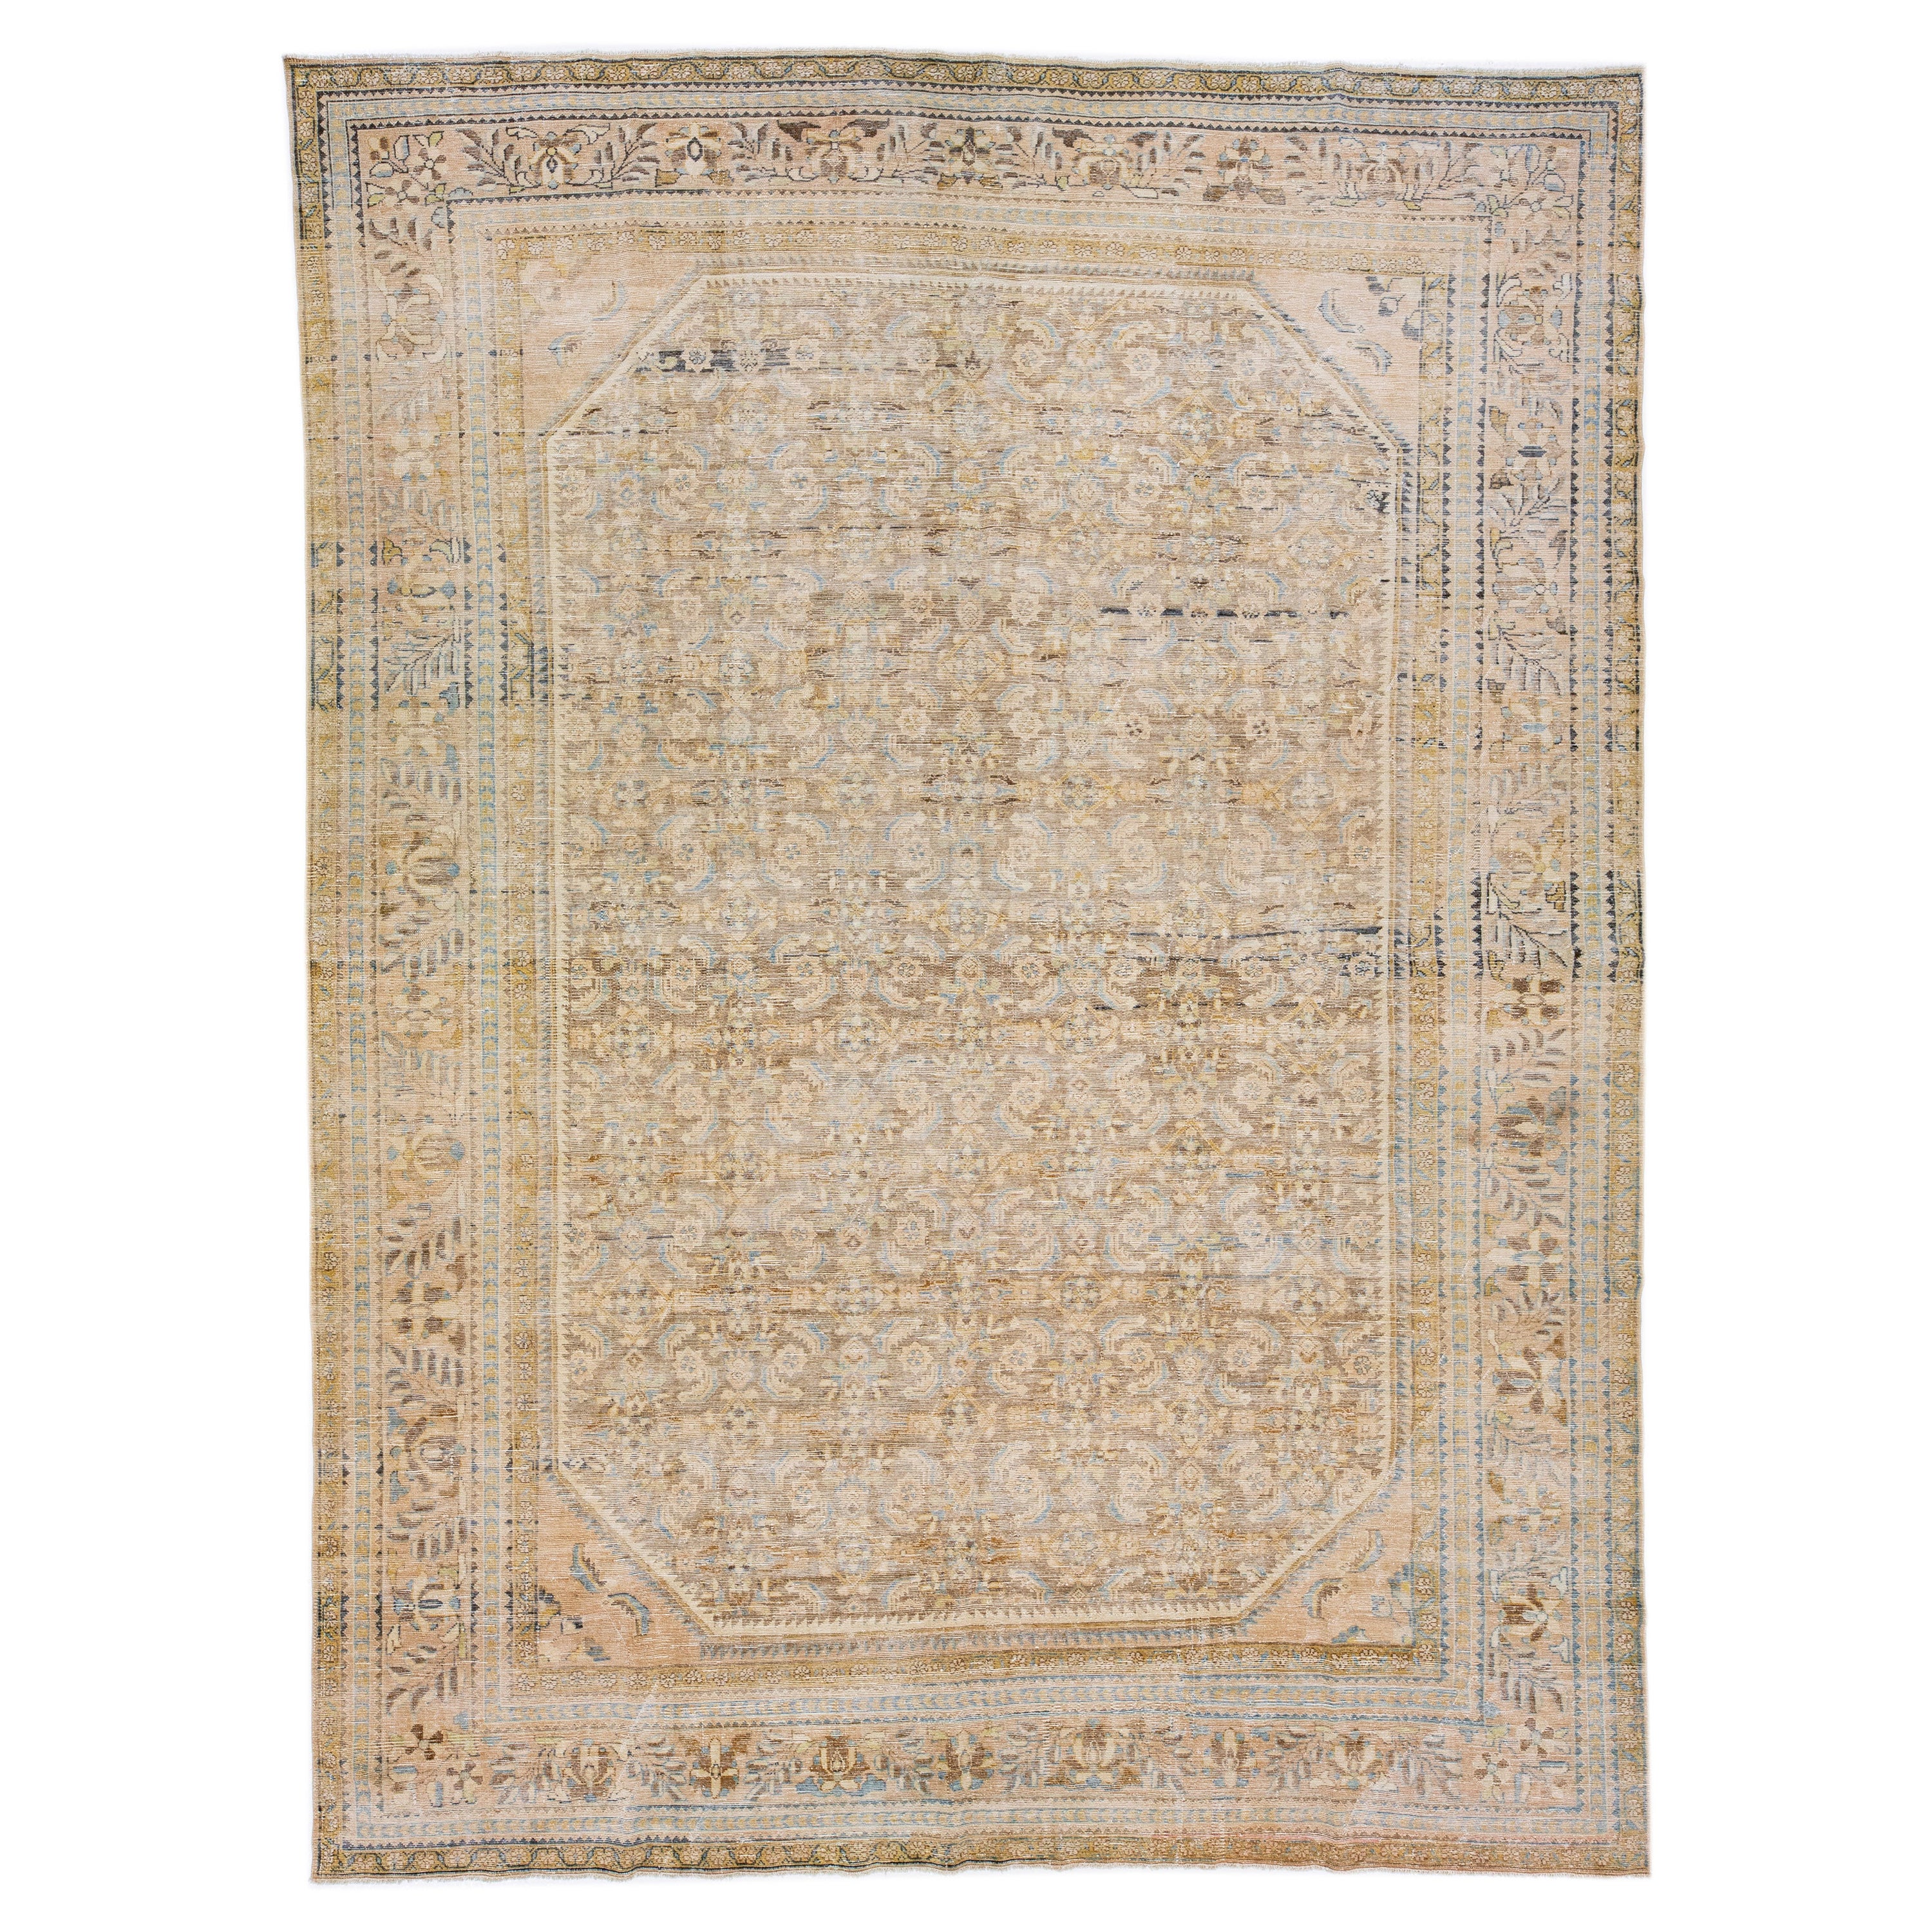 Tapis persan ancien en laine Malayer, fait à la main, de couleur havane, avec motif en relief